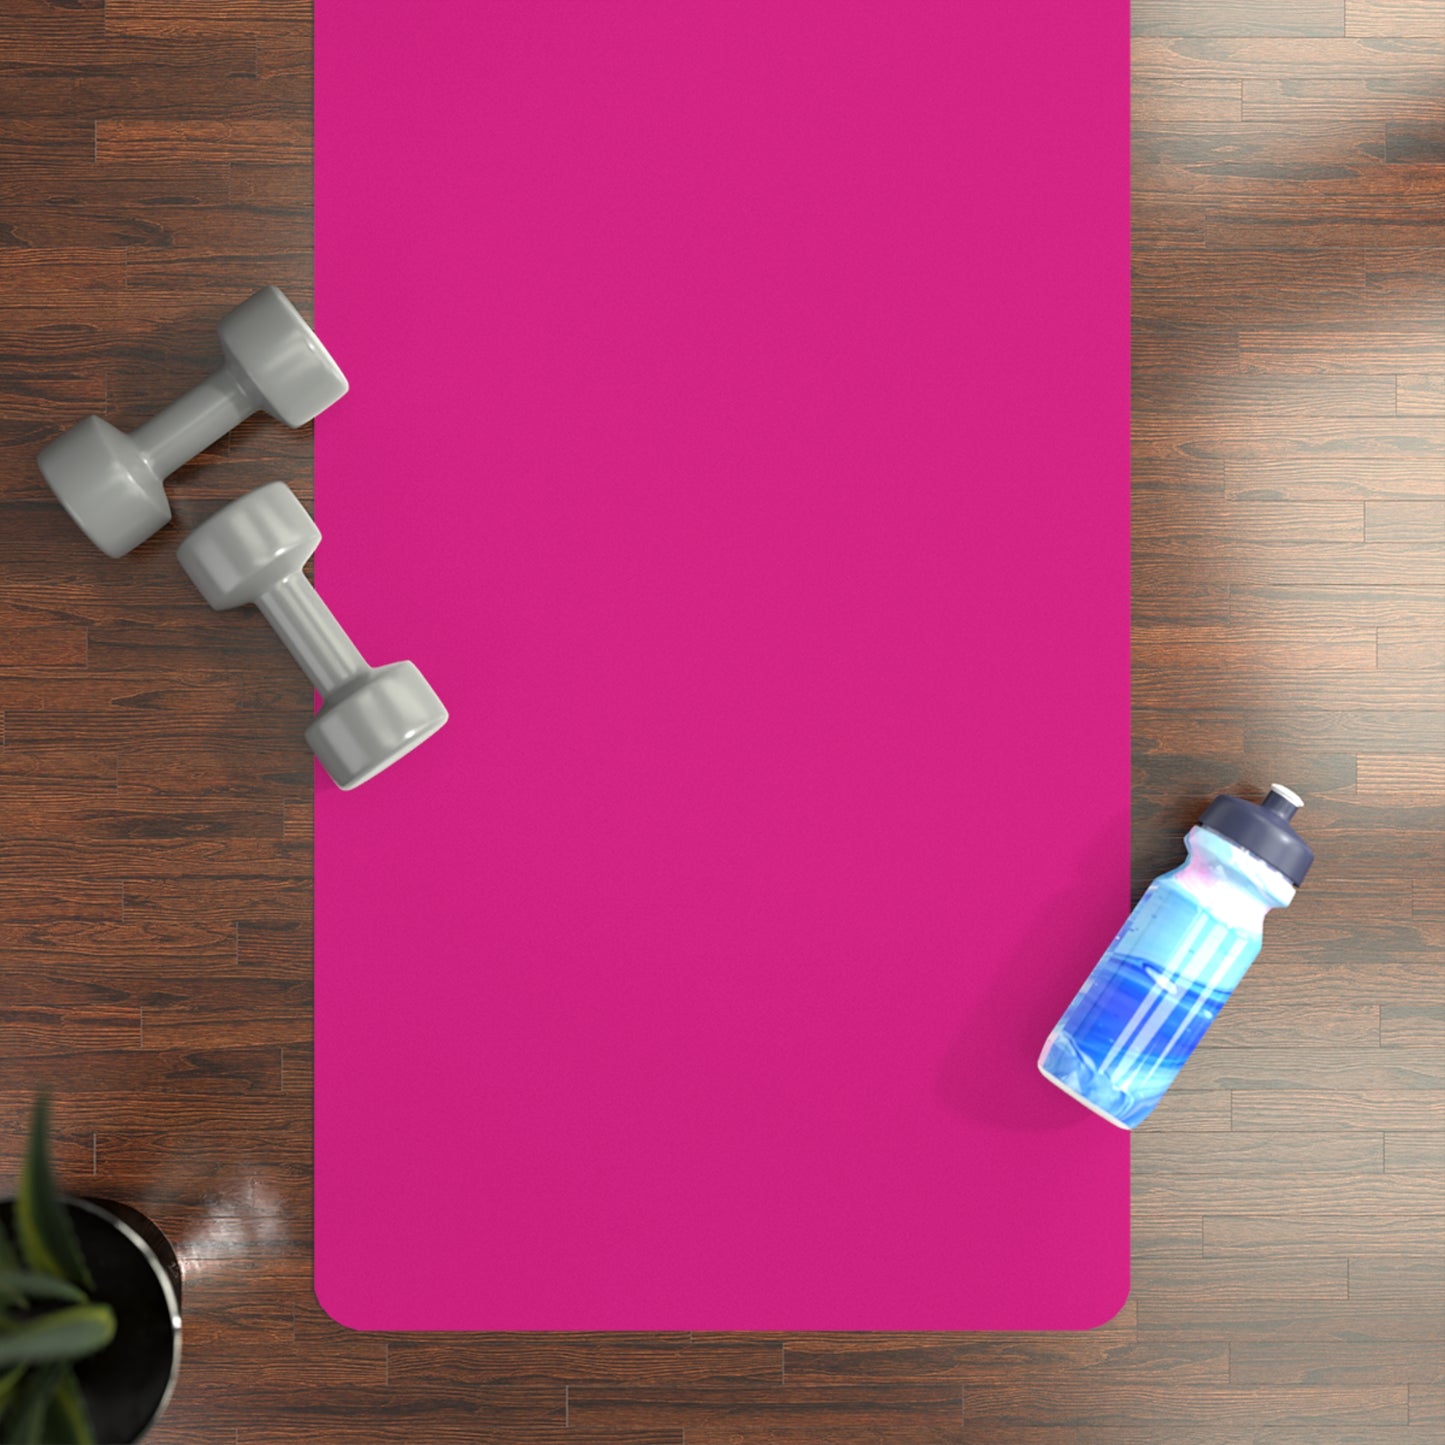 E0218A Pink - Yoga Mat